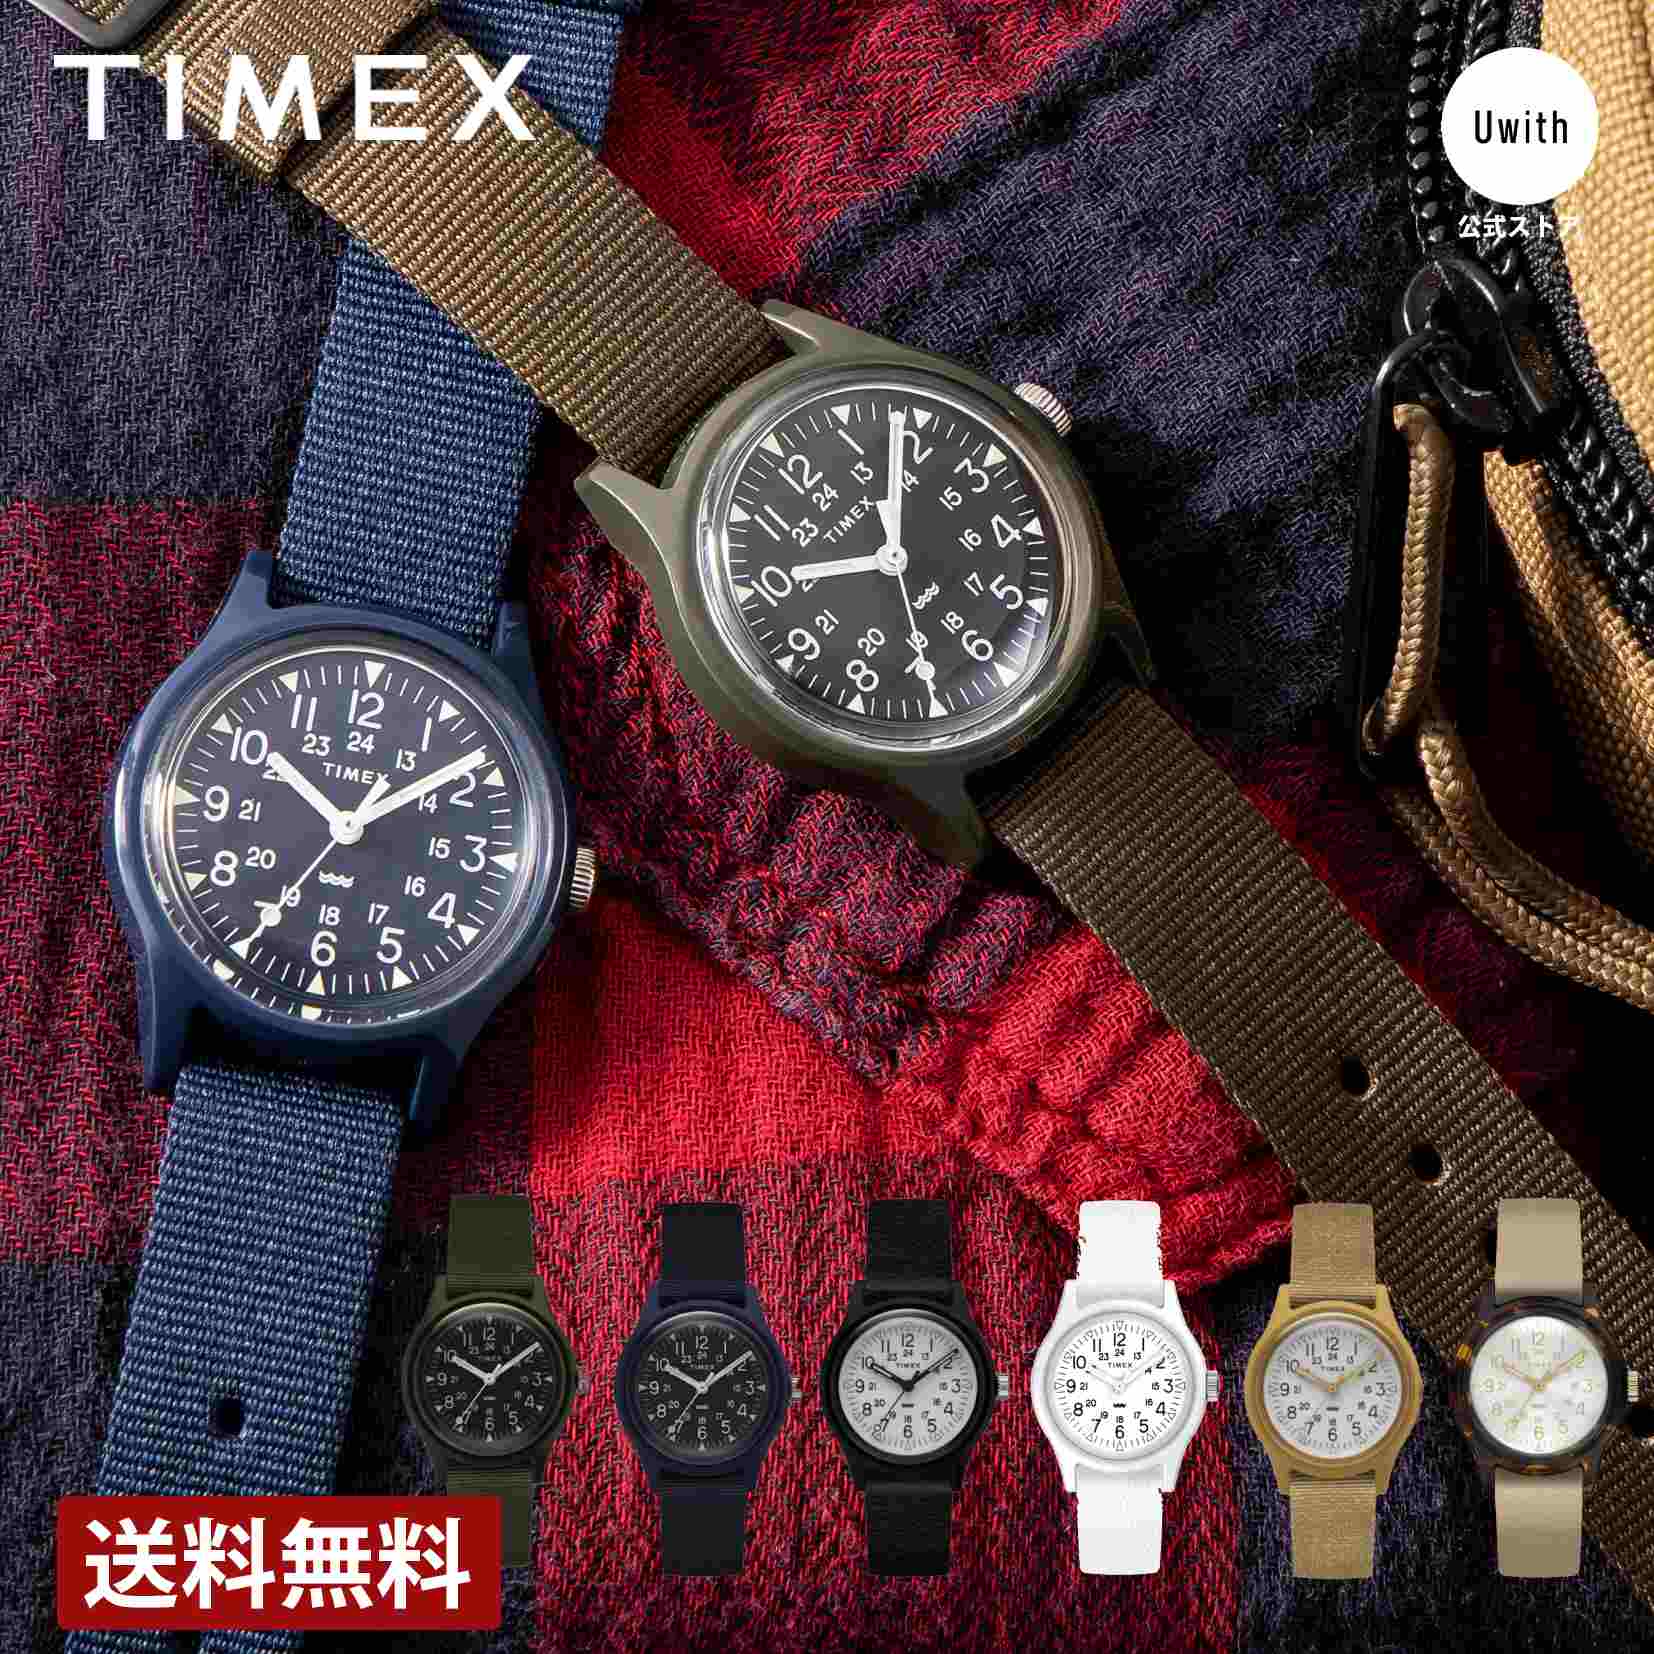 タイメックス 【公式ストア】TIMEX タイメックス オリジナルキャンパー29mm 腕時計 アメリカNo.1ウォッチブランド メンズ レディース 定番 人気